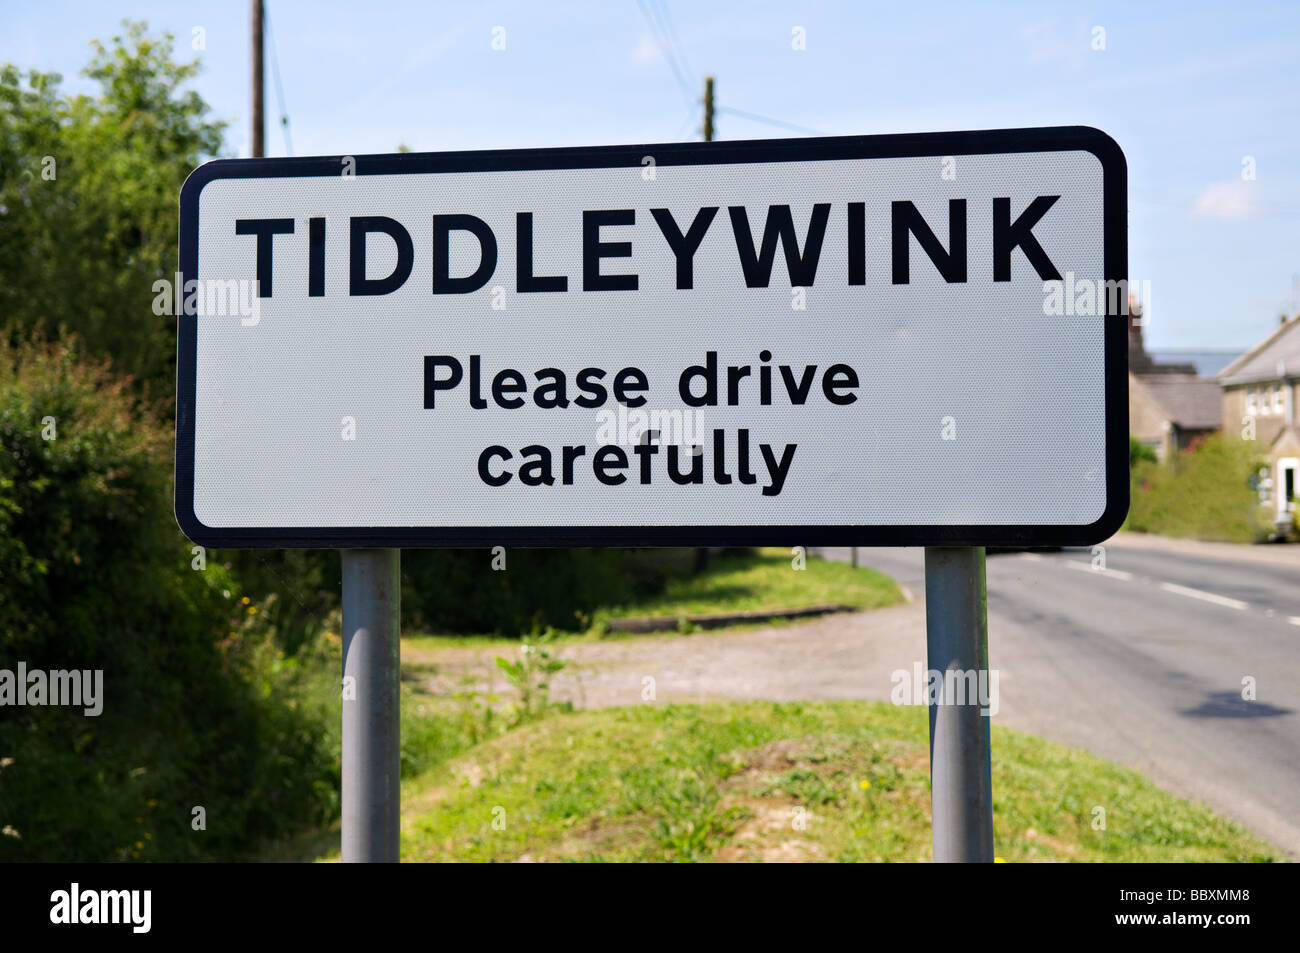 Cartello stradale del luogo insolito nome della piccola frazione di Tiddleywink vicino a Yatton Keynell nel Wiltshire, Inghilterra sulla giornata d'estate Foto Stock